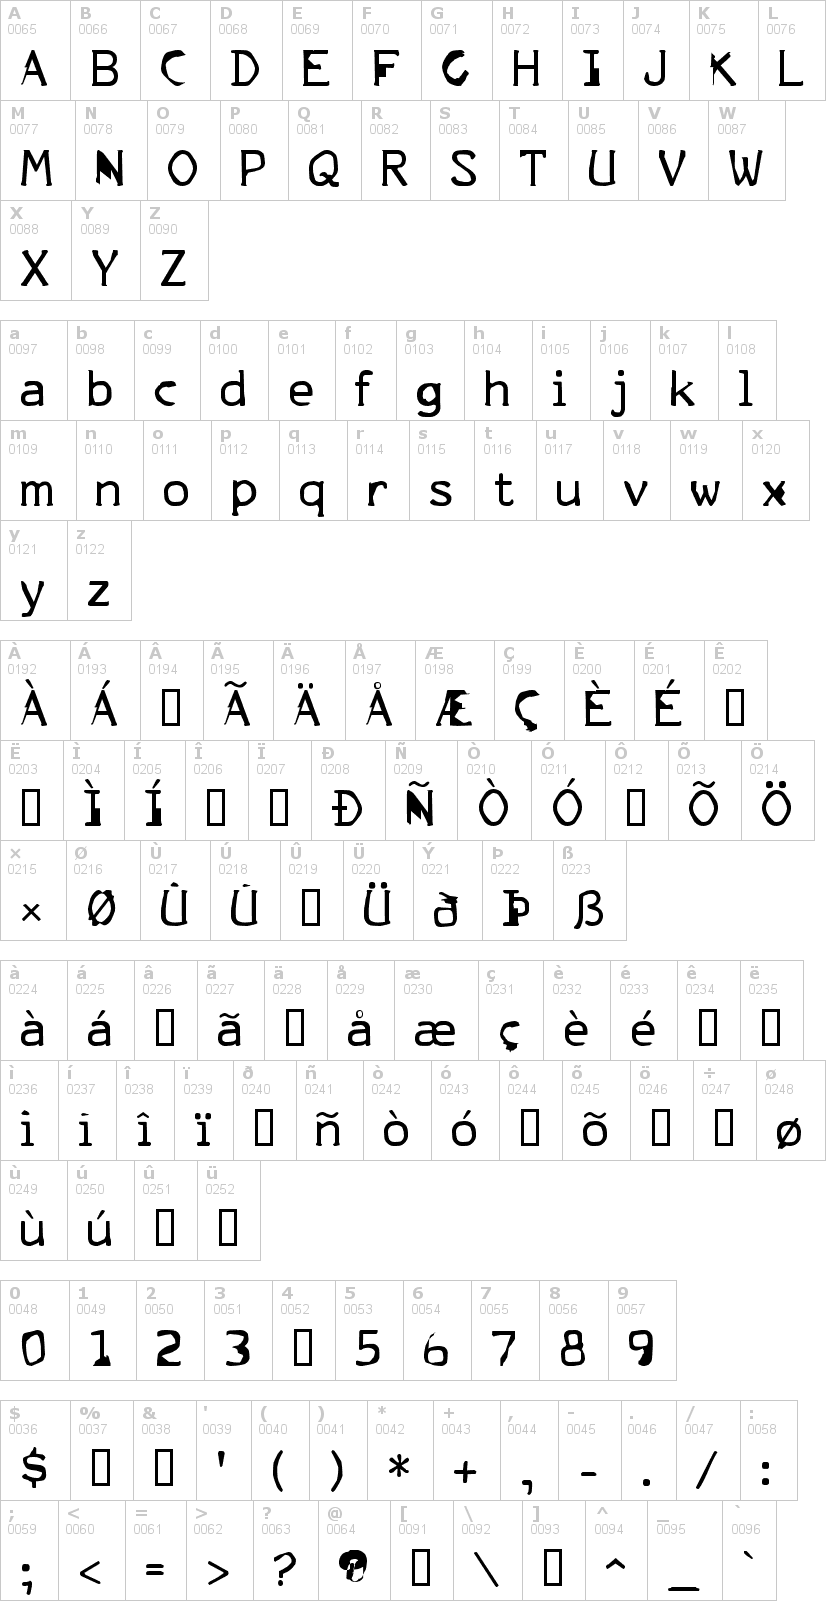 Lettere dell'alfabeto del font fkr-parklife con le quali è possibile realizzare adesivi prespaziati